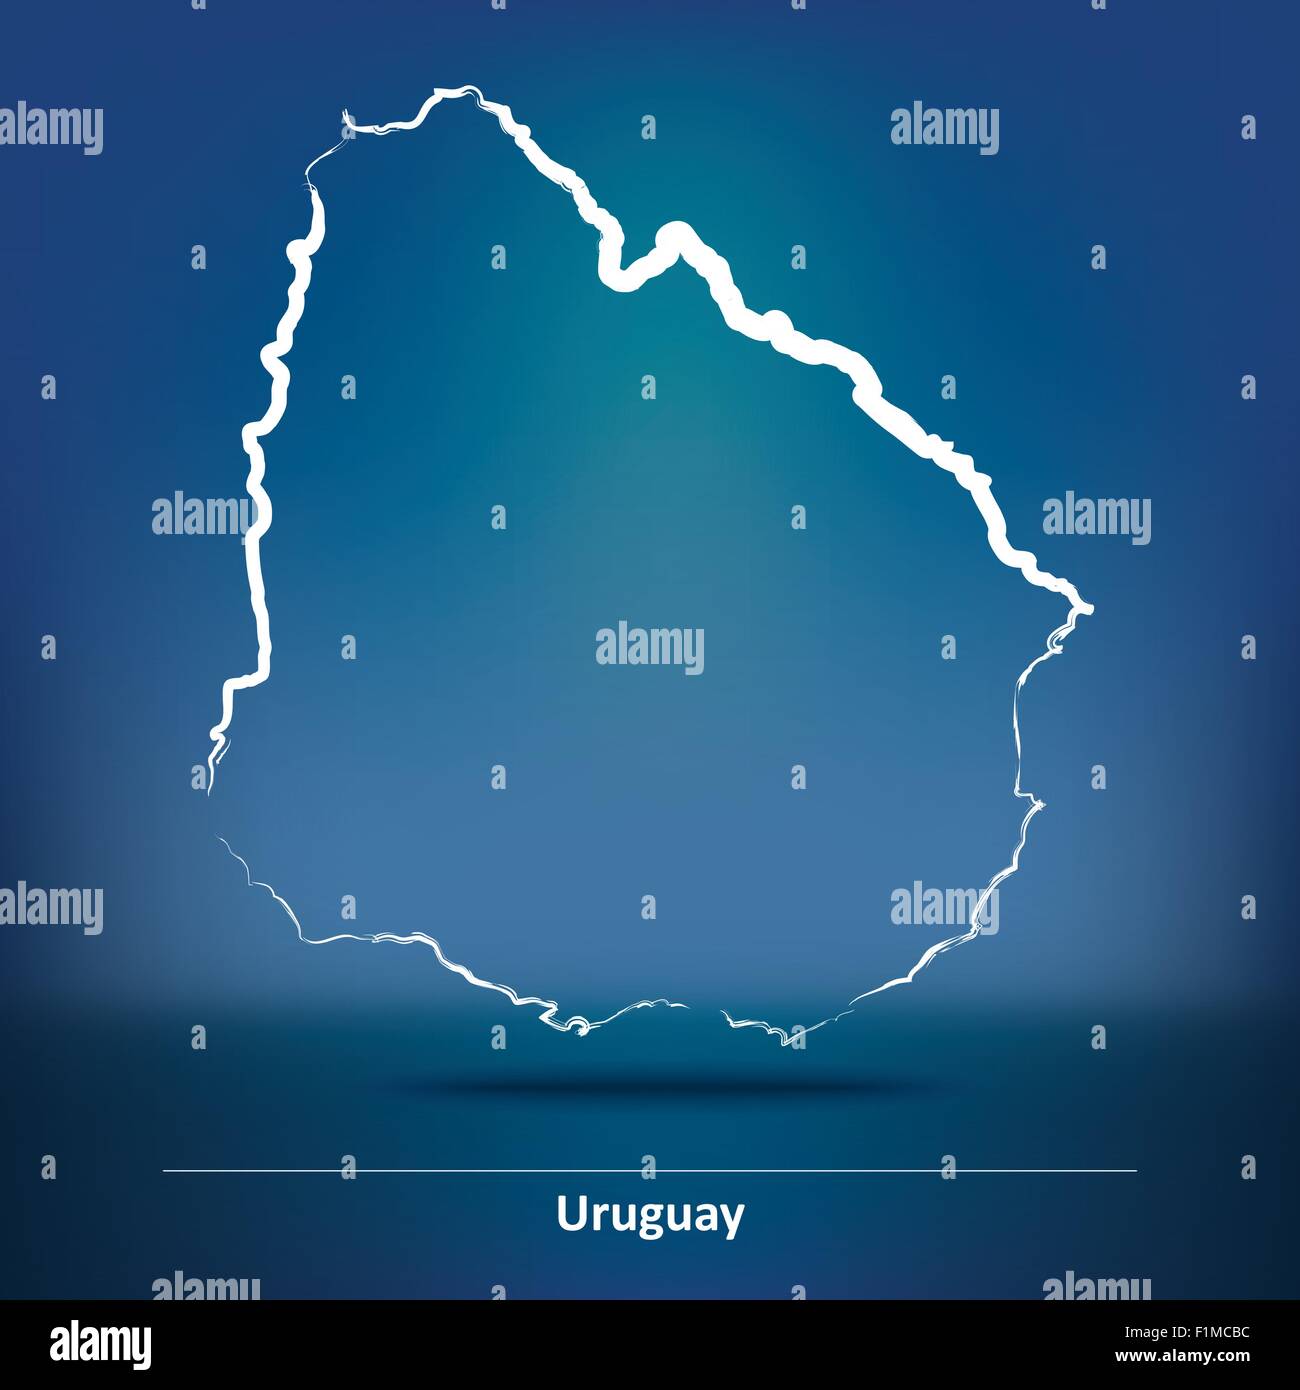 Karte von Uruguay - Vektor-Illustration Doodle Stock Vektor